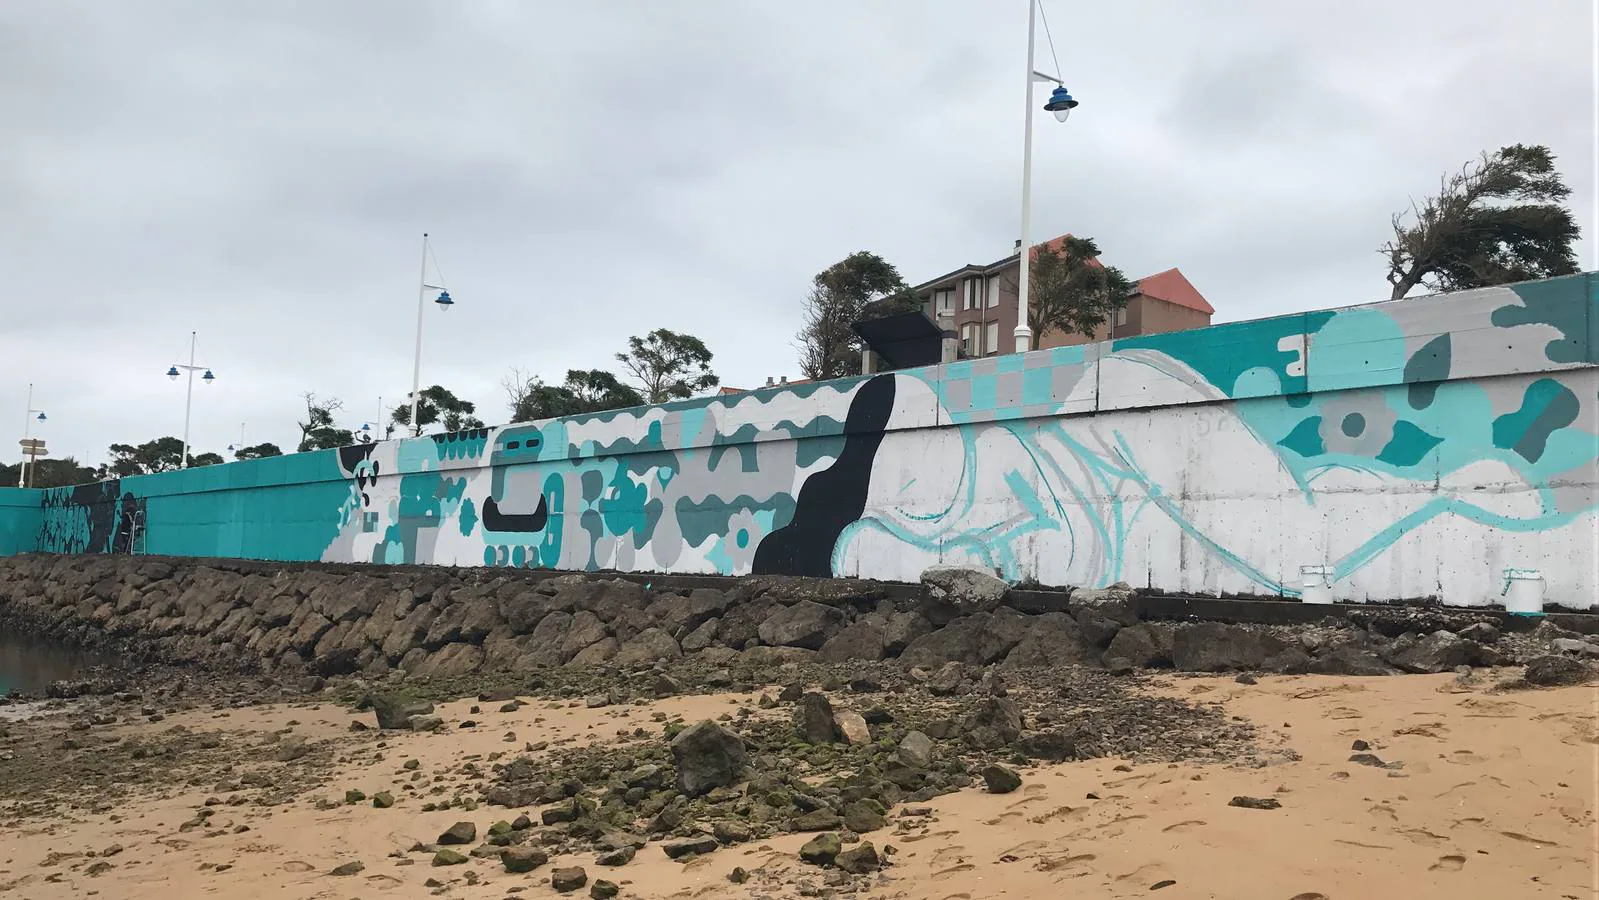 Fresh Wall Somo une el turismo, el surf y el urbanismo a través del arte urbano